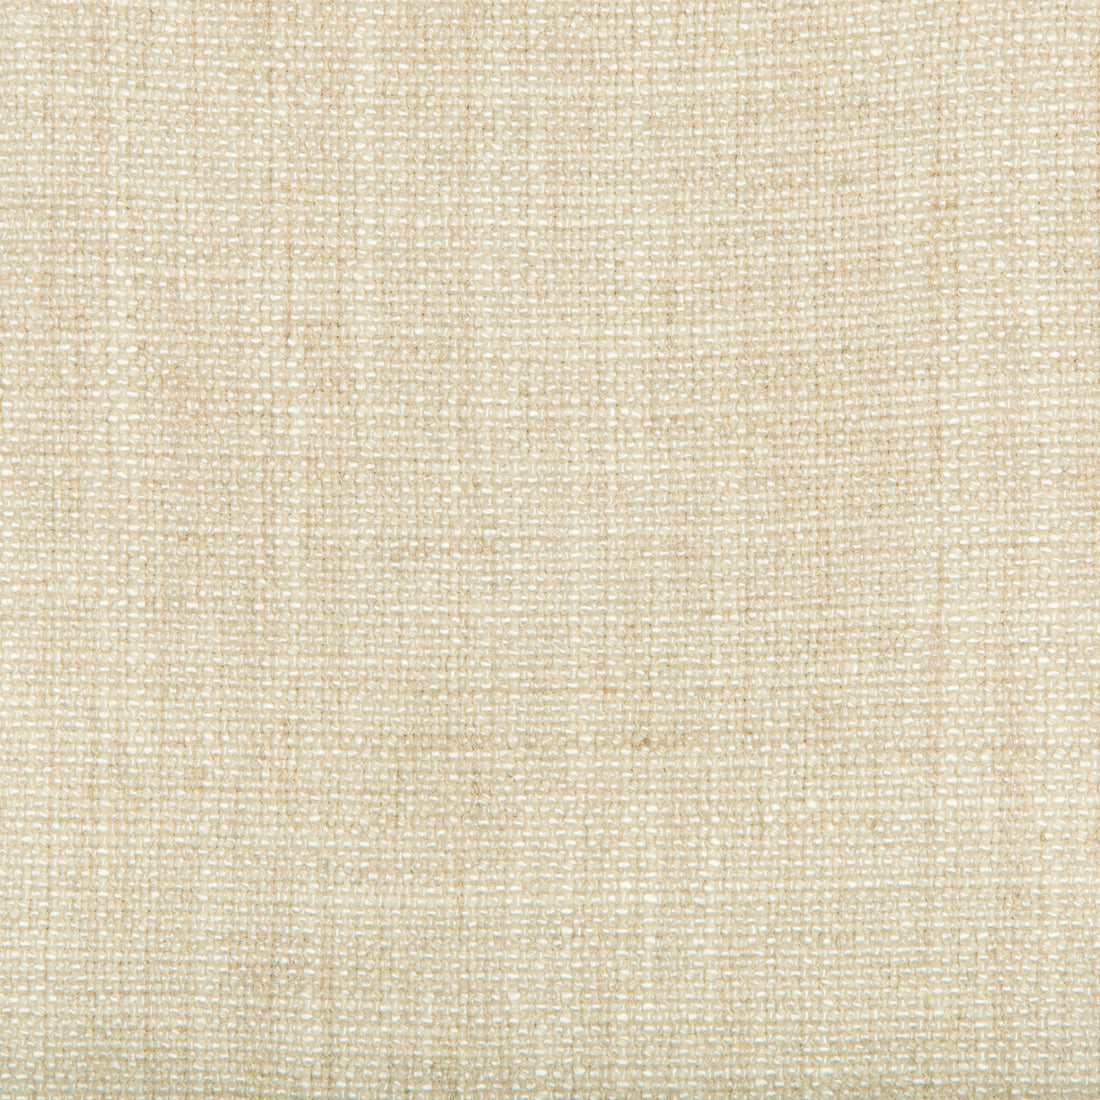 Kravet Basics fabric in 35189-1116 color - pattern 35189.1116.0 - by Kravet Basics